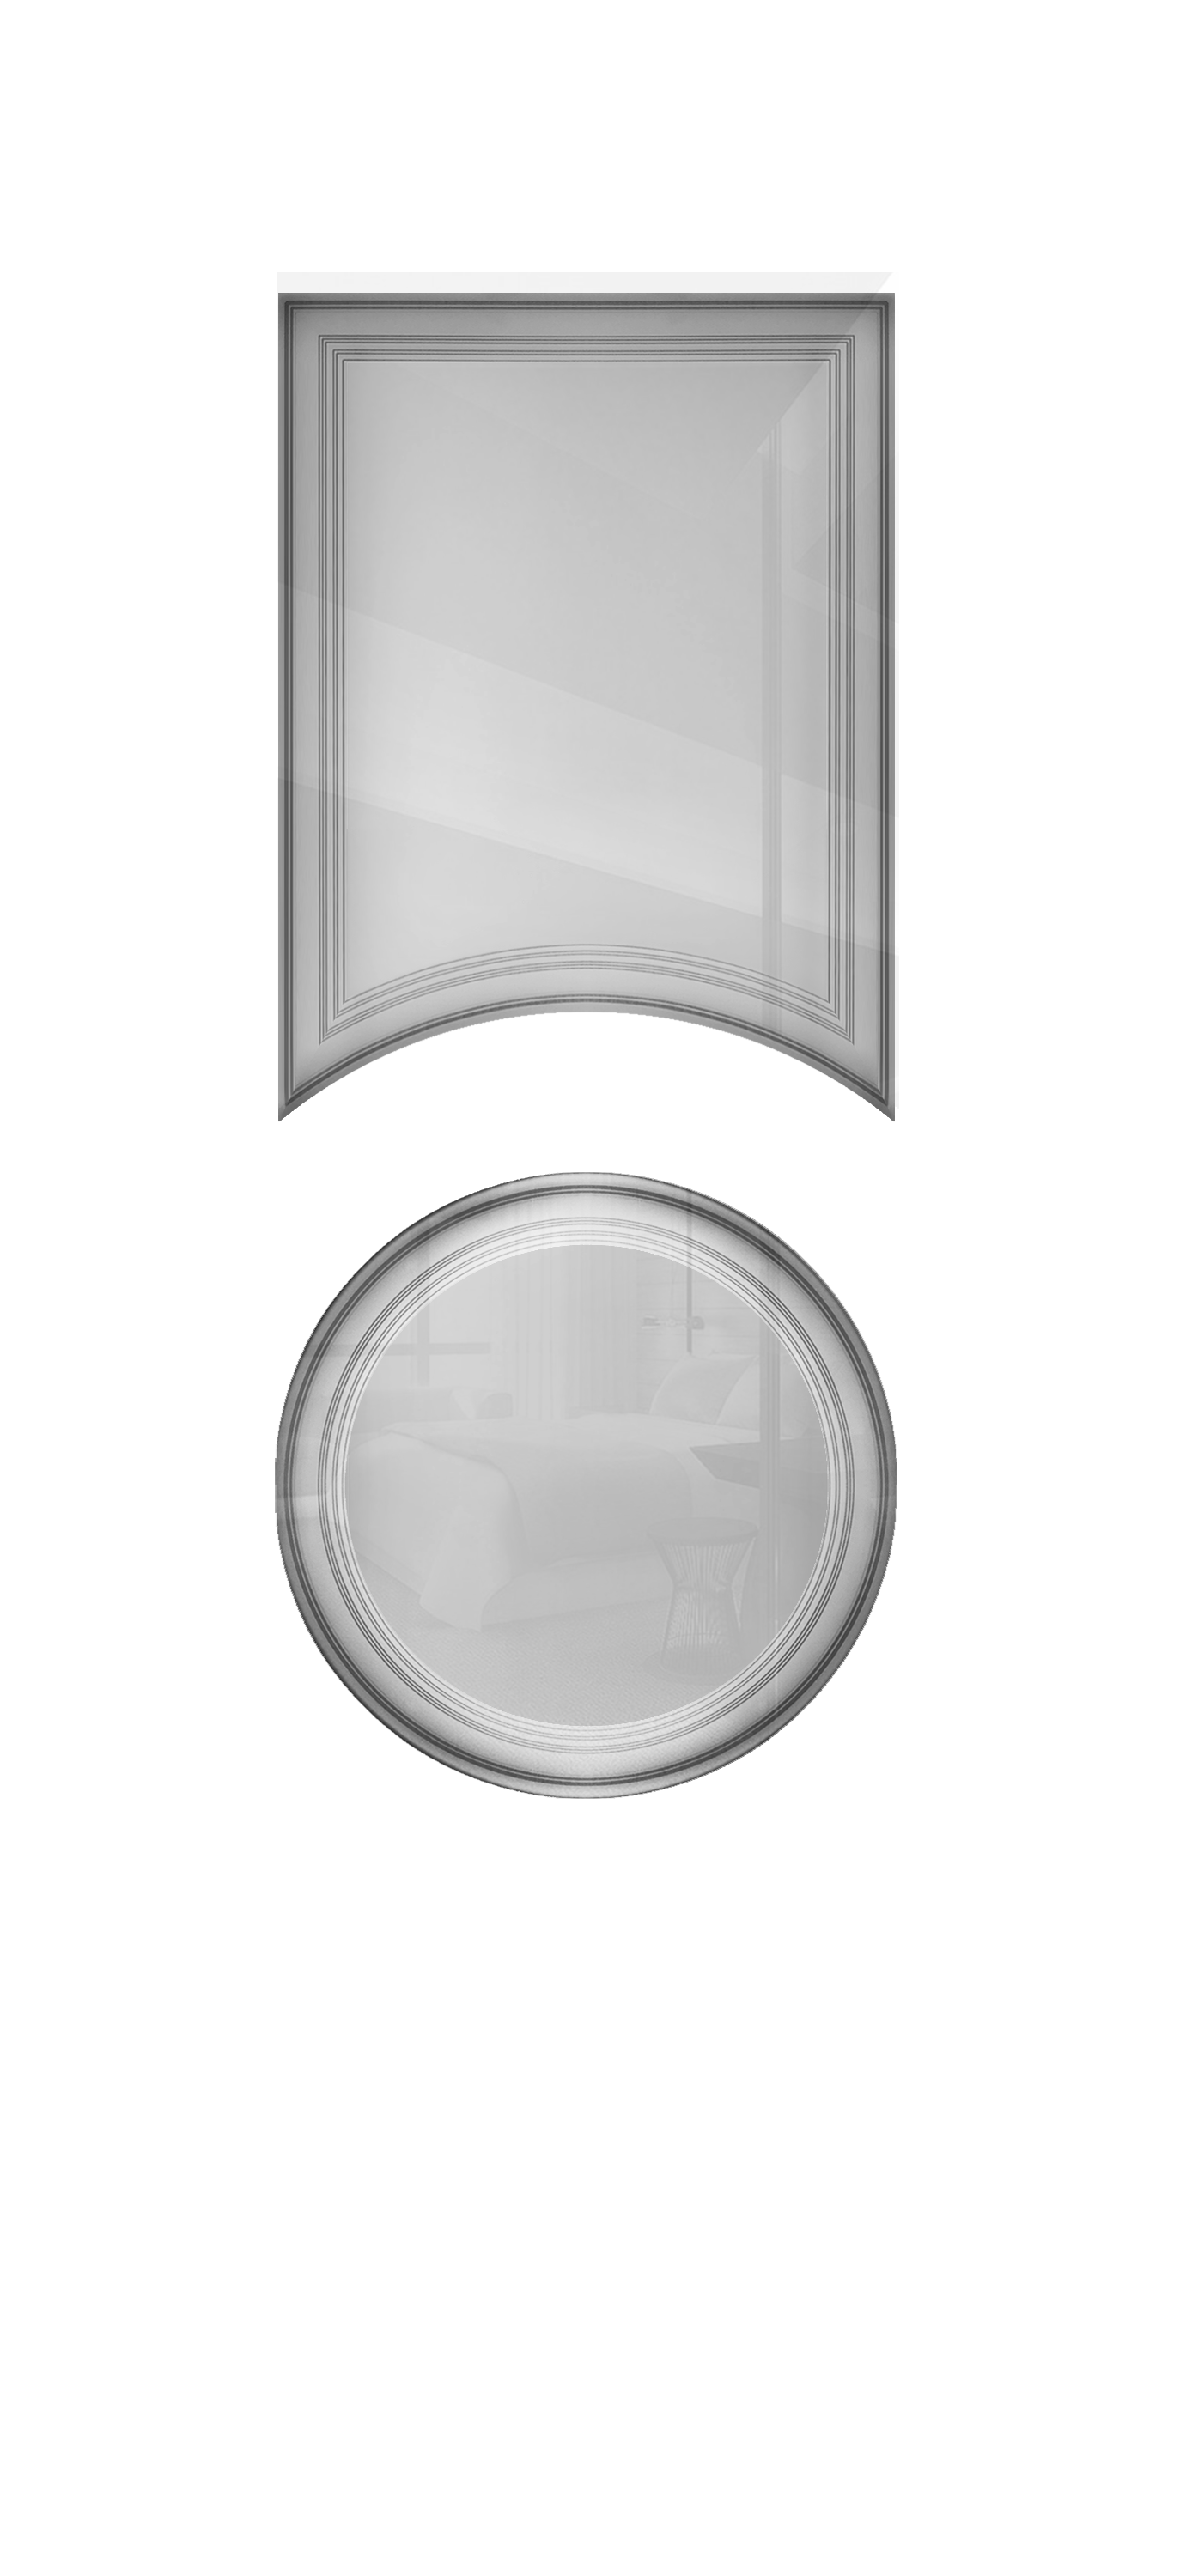 Межкомнатная дверь «Vision 8». Вид отделки Белая эмаль Остекление:  Cтандартный наличник